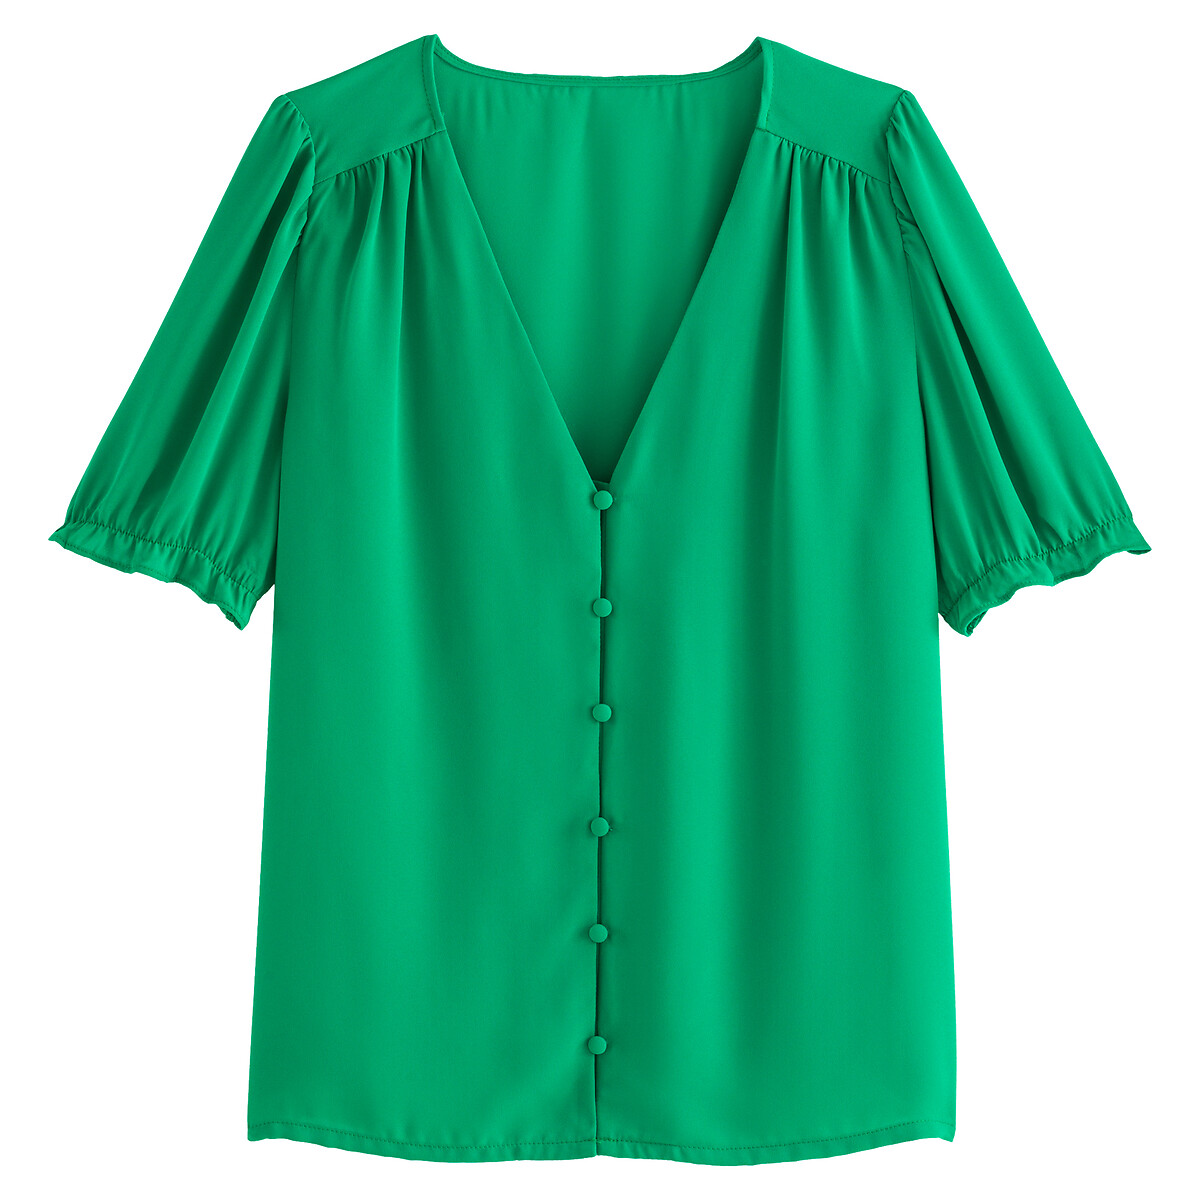 Блузка LA REDOUTE COLLECTIONS Блузка С V-образным вырезом с короткими рукавами 34 (FR) - 40 (RUS) зеленый, размер 34 (FR) - 40 (RUS) Блузка С V-образным вырезом с короткими рукавами 34 (FR) - 40 (RUS) зеленый - фото 5